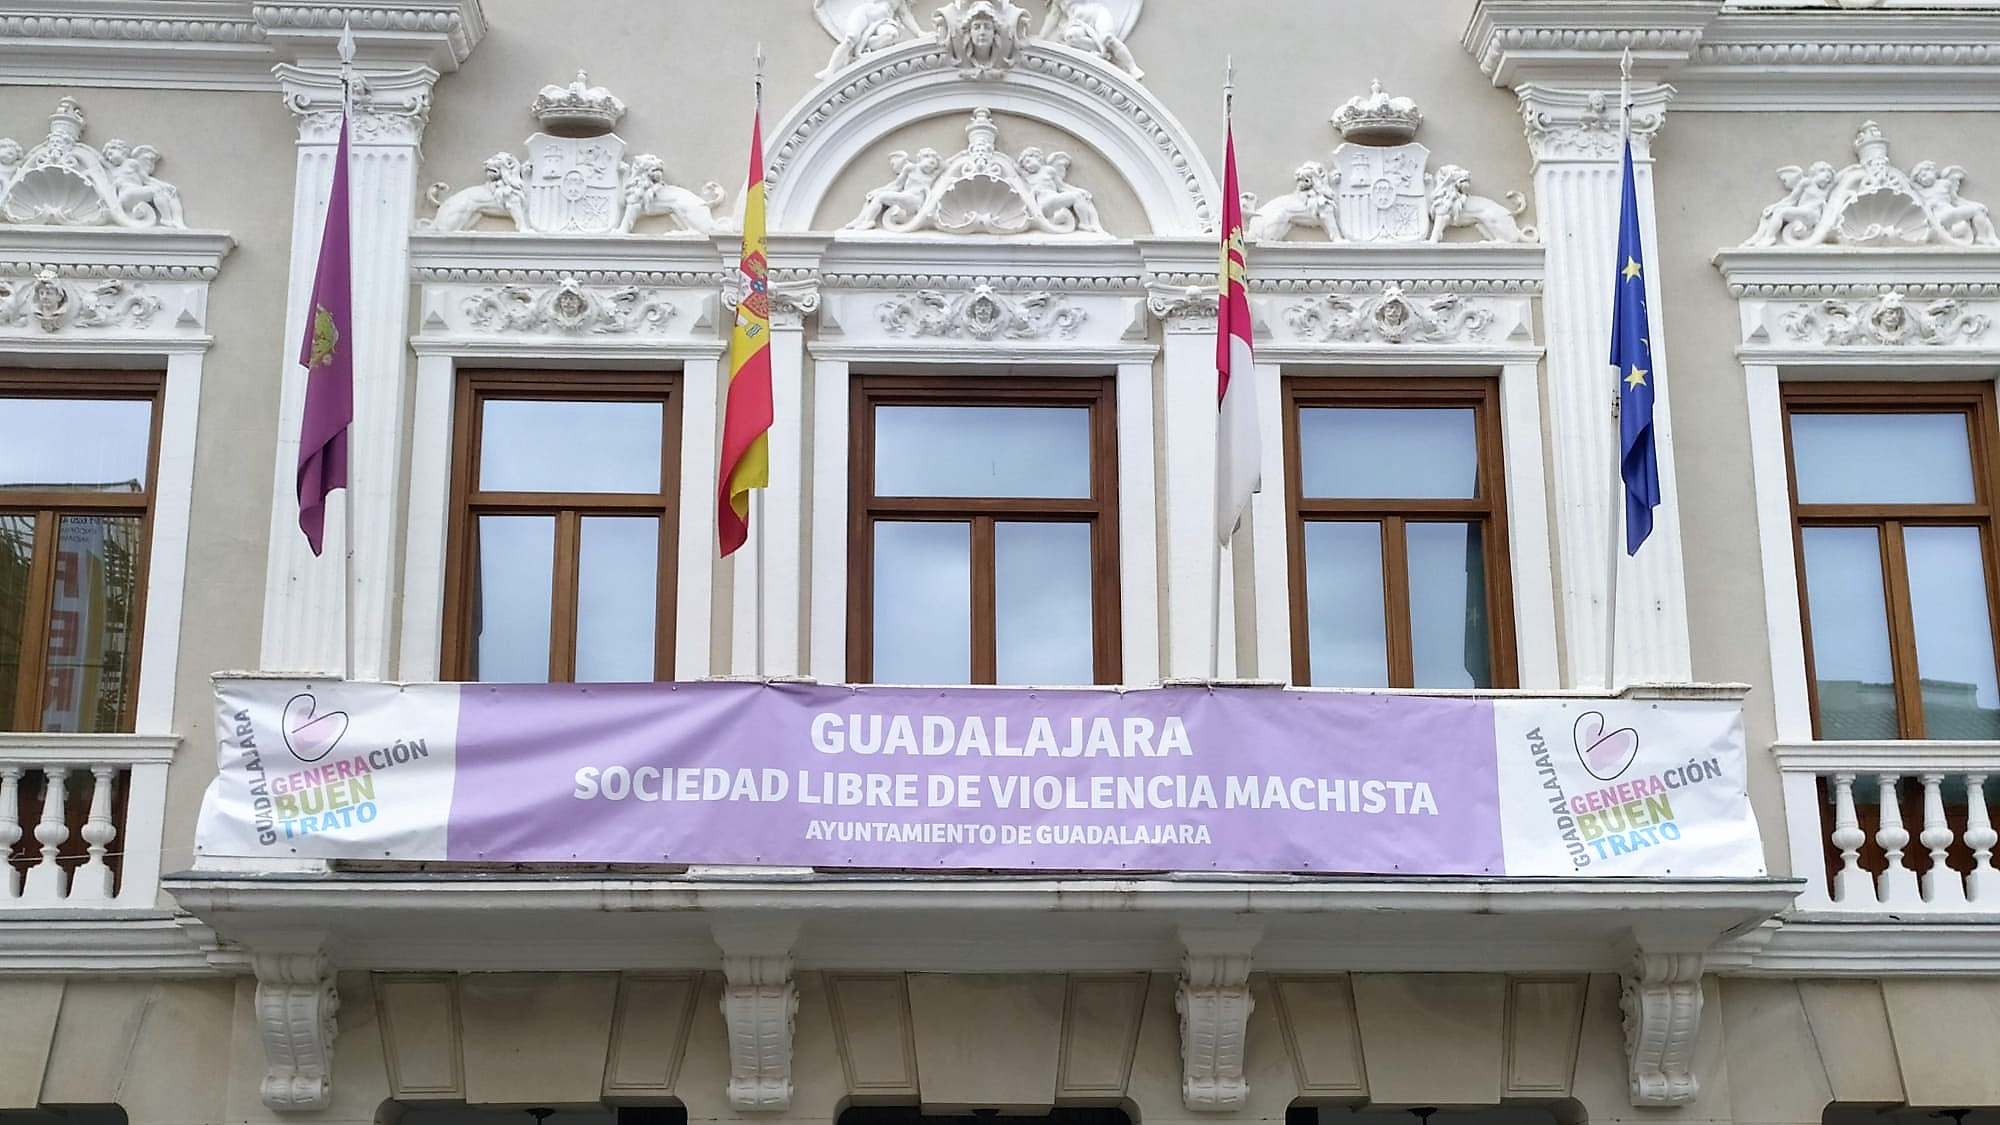 Pancarta en el Ayuntamiento de Guadalajara contra la violencia machista, el 25 de noviembre de 2020.